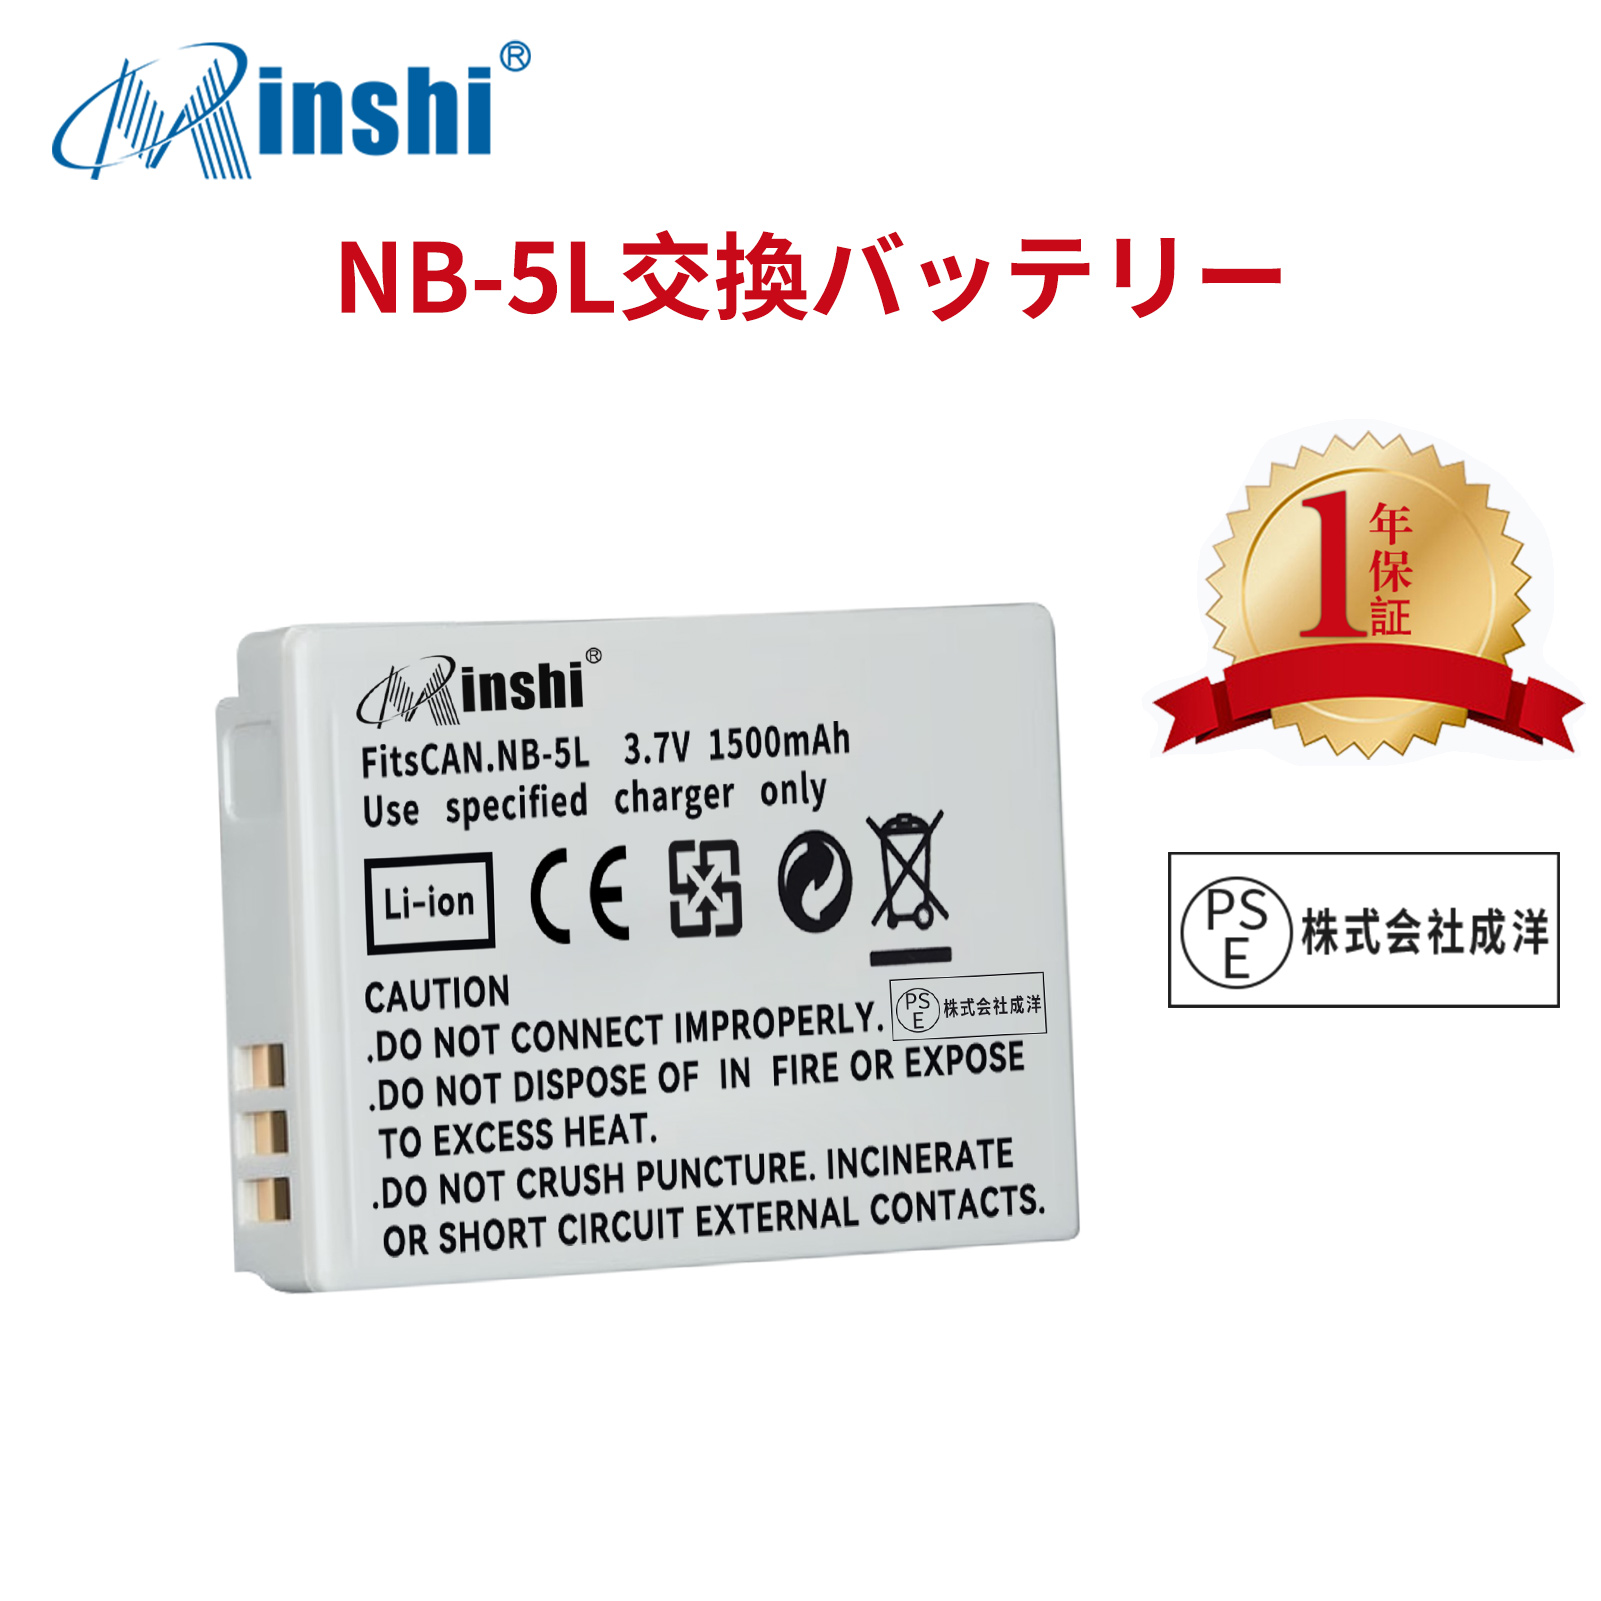 【1年保証】minshi CANON 910IS NB-5L  NB-5L【1500mAh 3.7V】PSE認定済 高品質交換用バッテリー